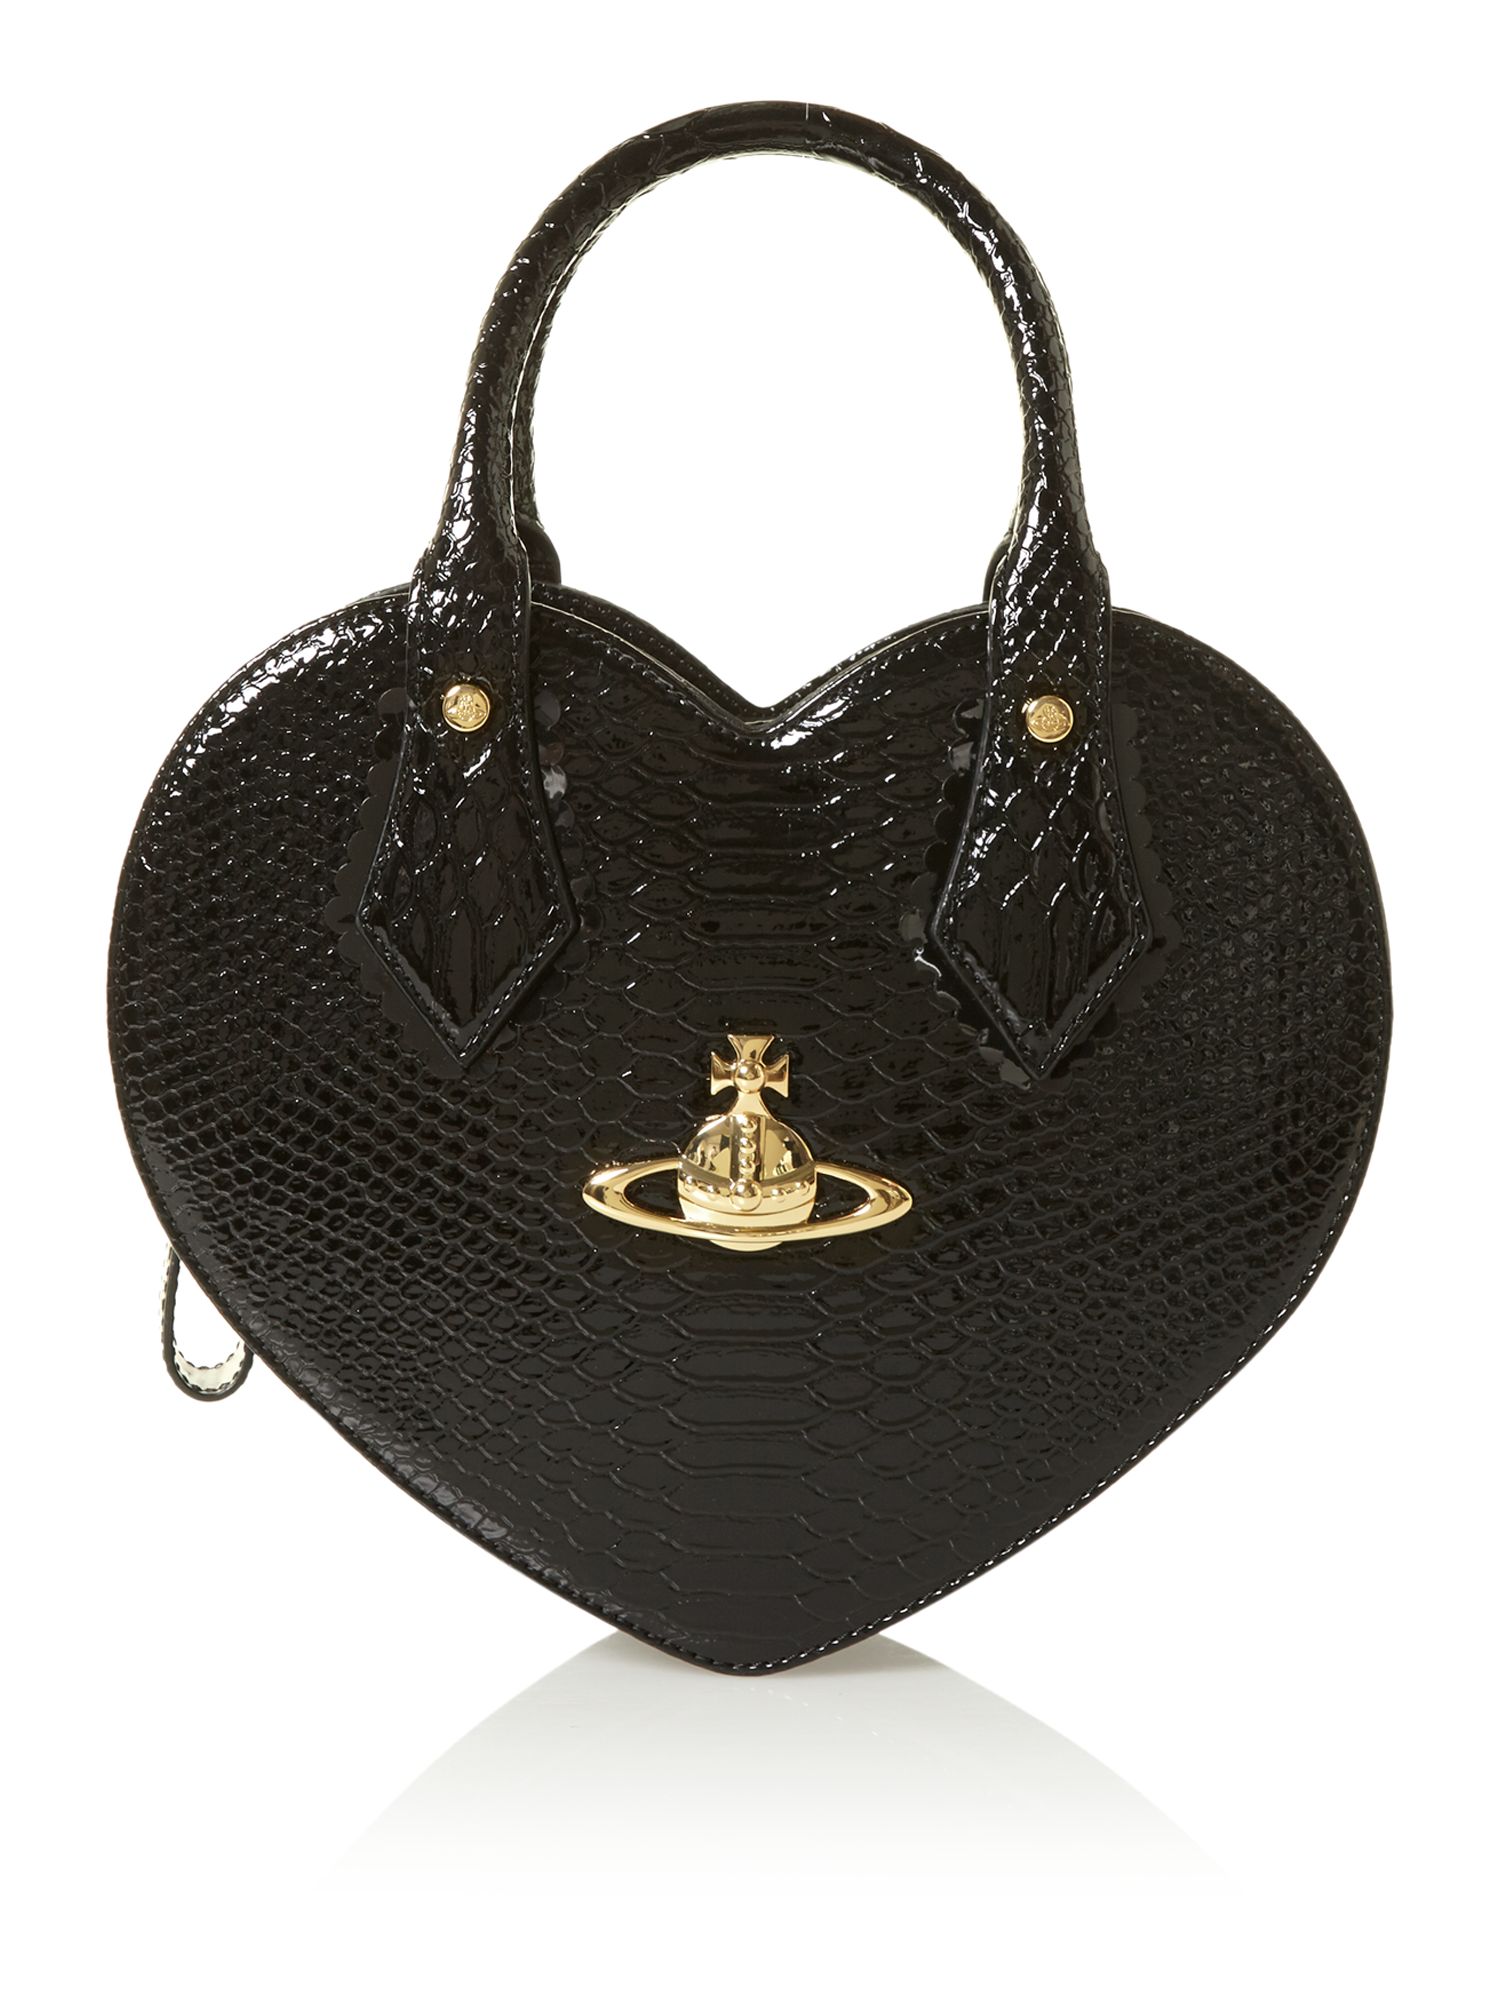 Vivienne Westwood Frilly Snake Black Heart Bag in Black | Lyst